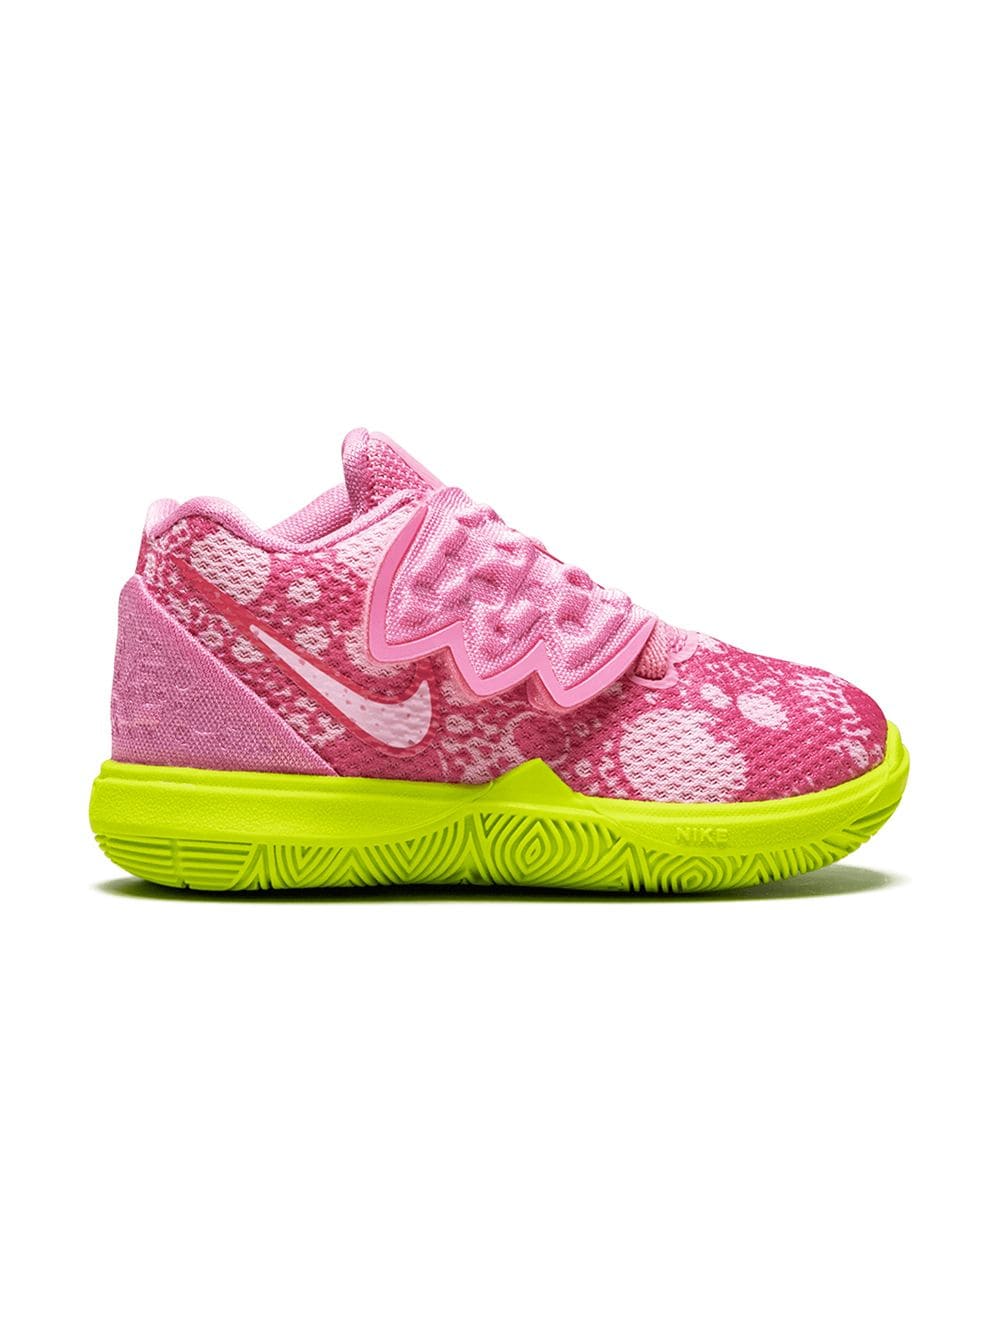 Nike Kids x SpongeBob SquarePants Kyrie 5 "Patrick Star" sneakers - Pink von Nike Kids